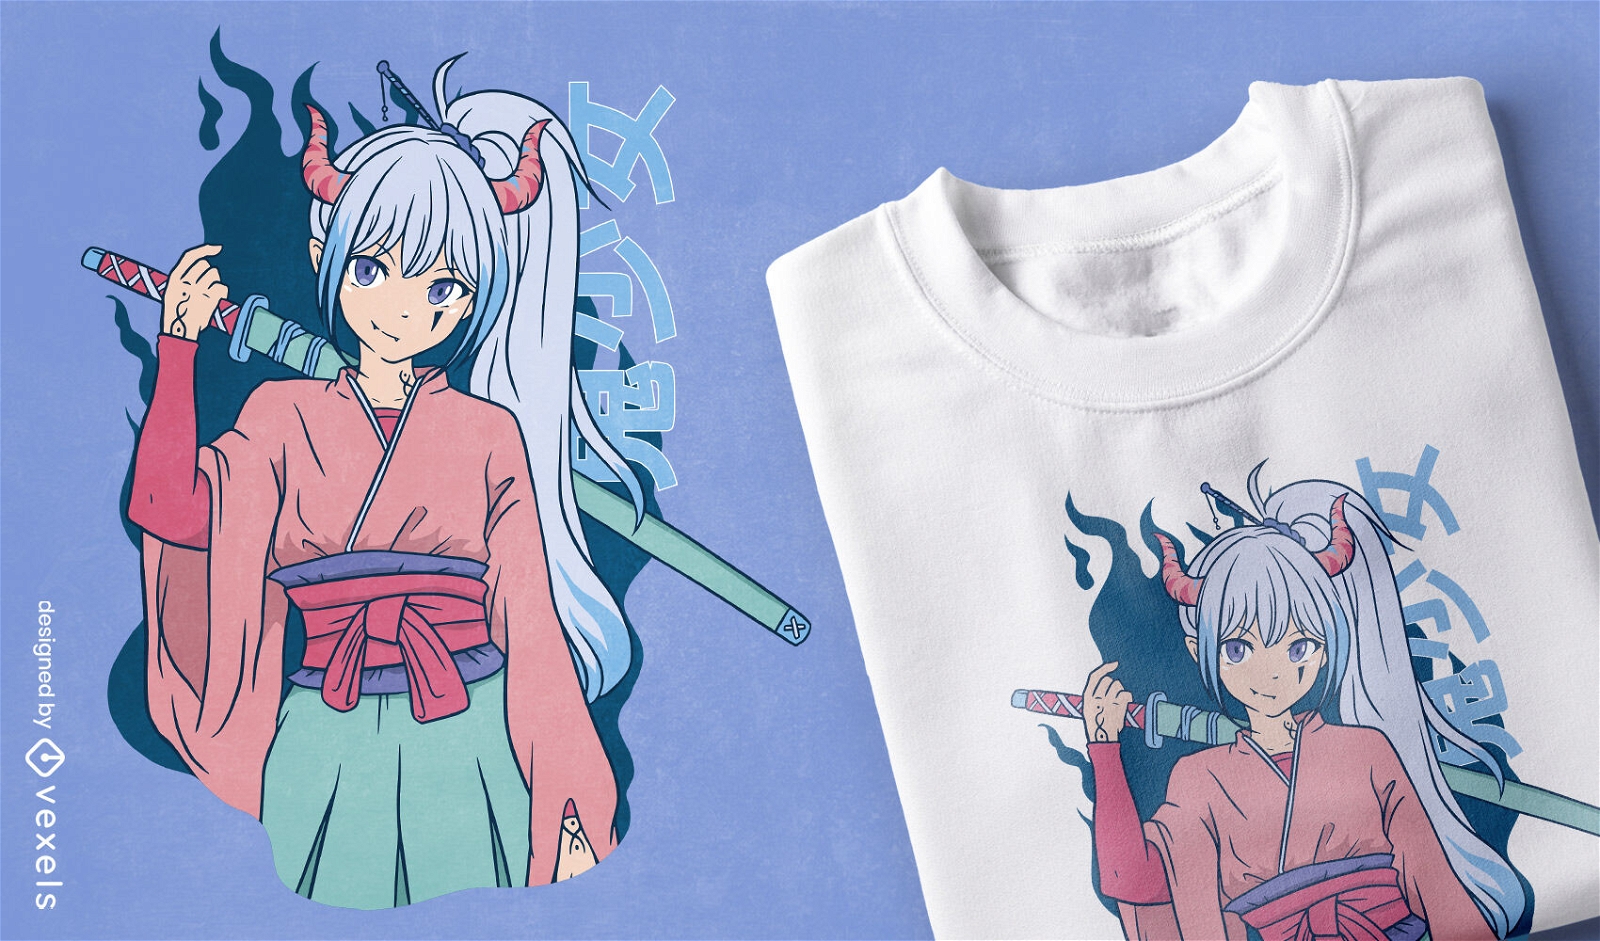 Chica anime con diseño de camiseta katana.